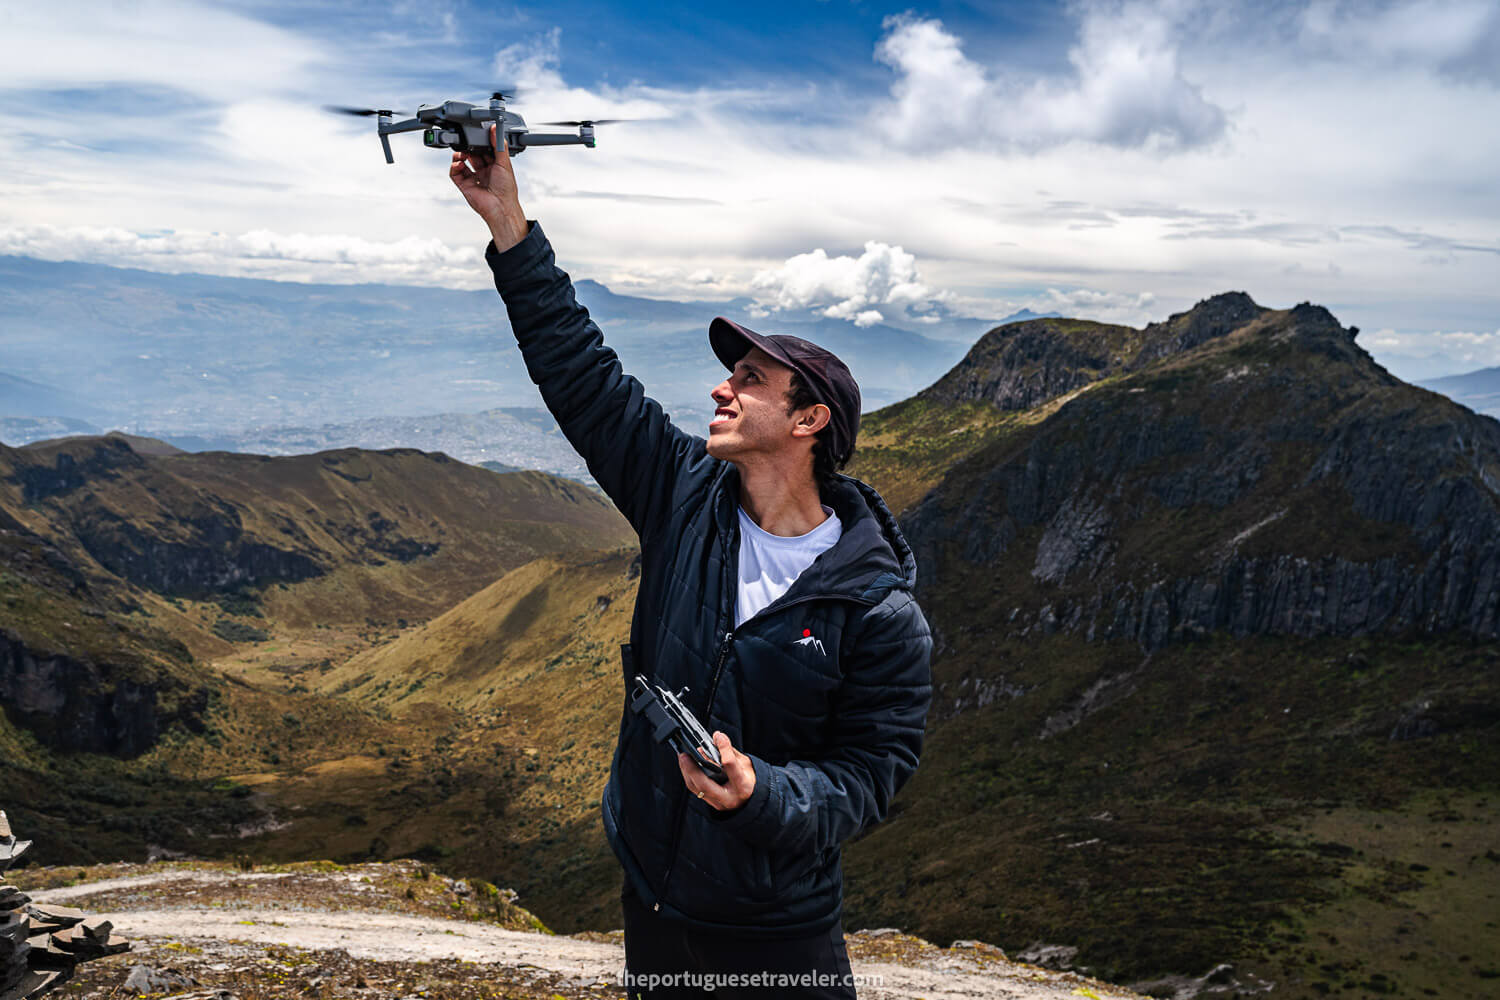 Dani and his dear drone at Cerro Ladrillos